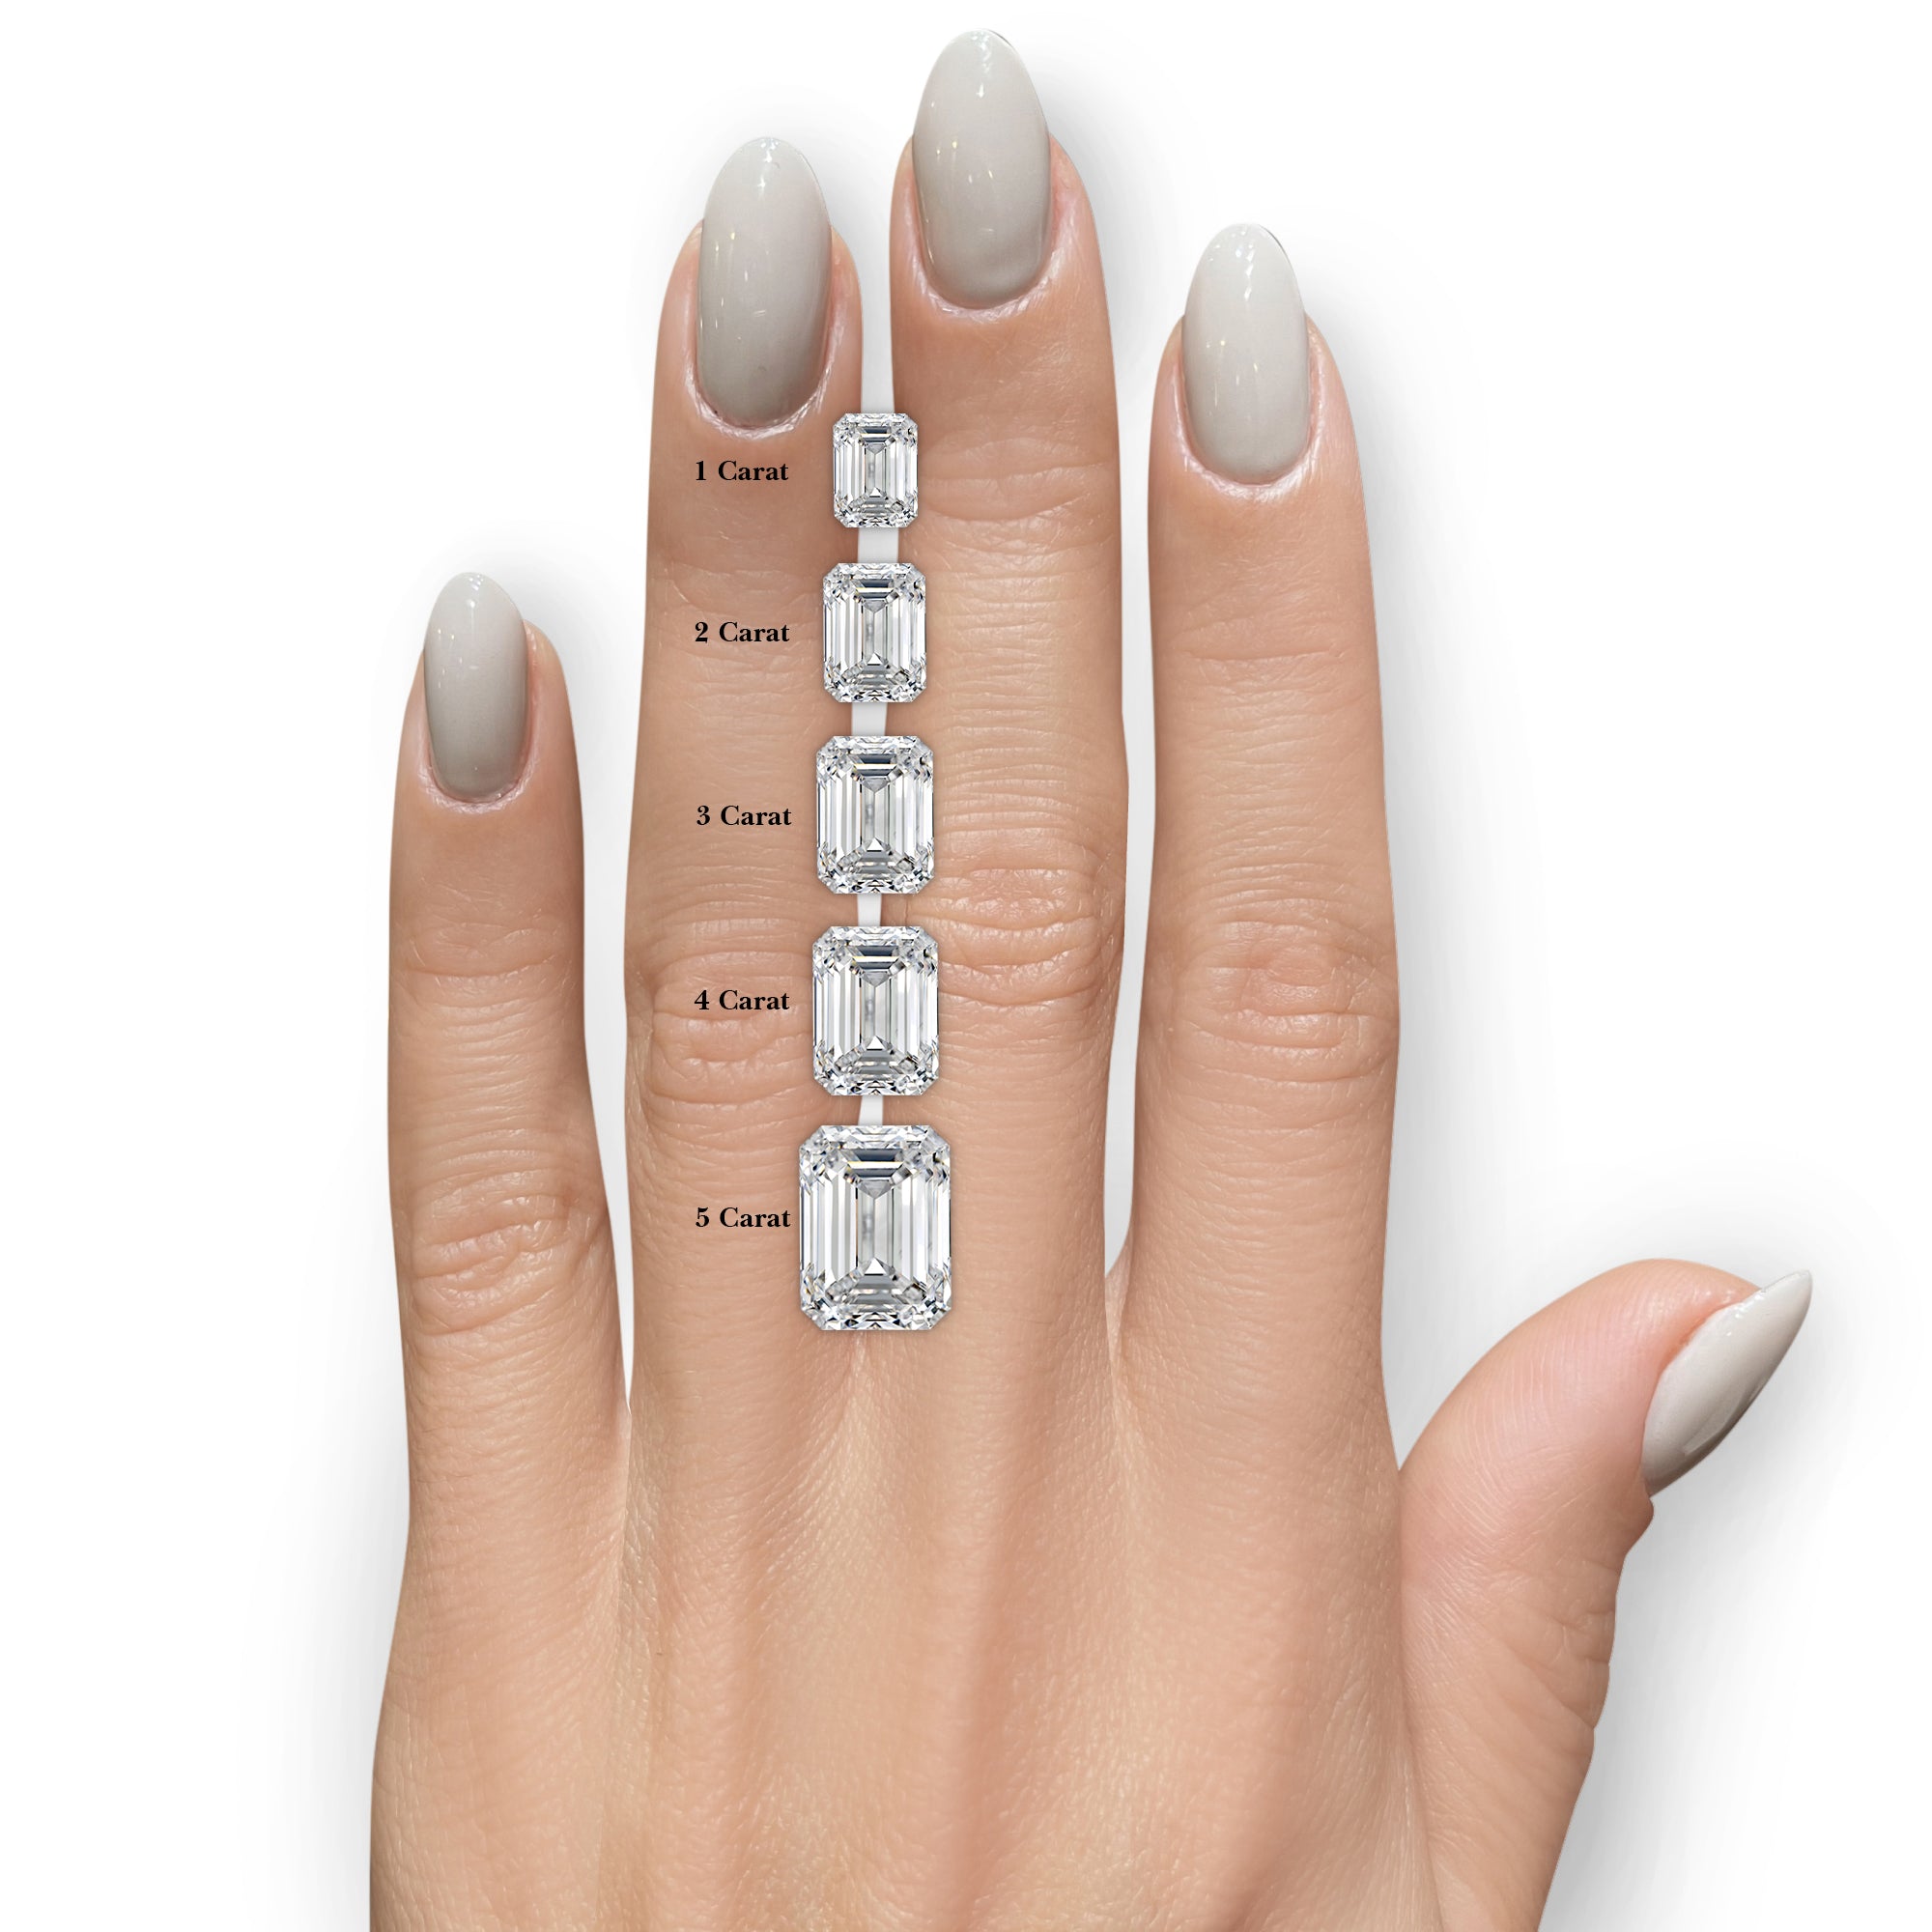 Viola Diamond Engagement Ring -Platinum